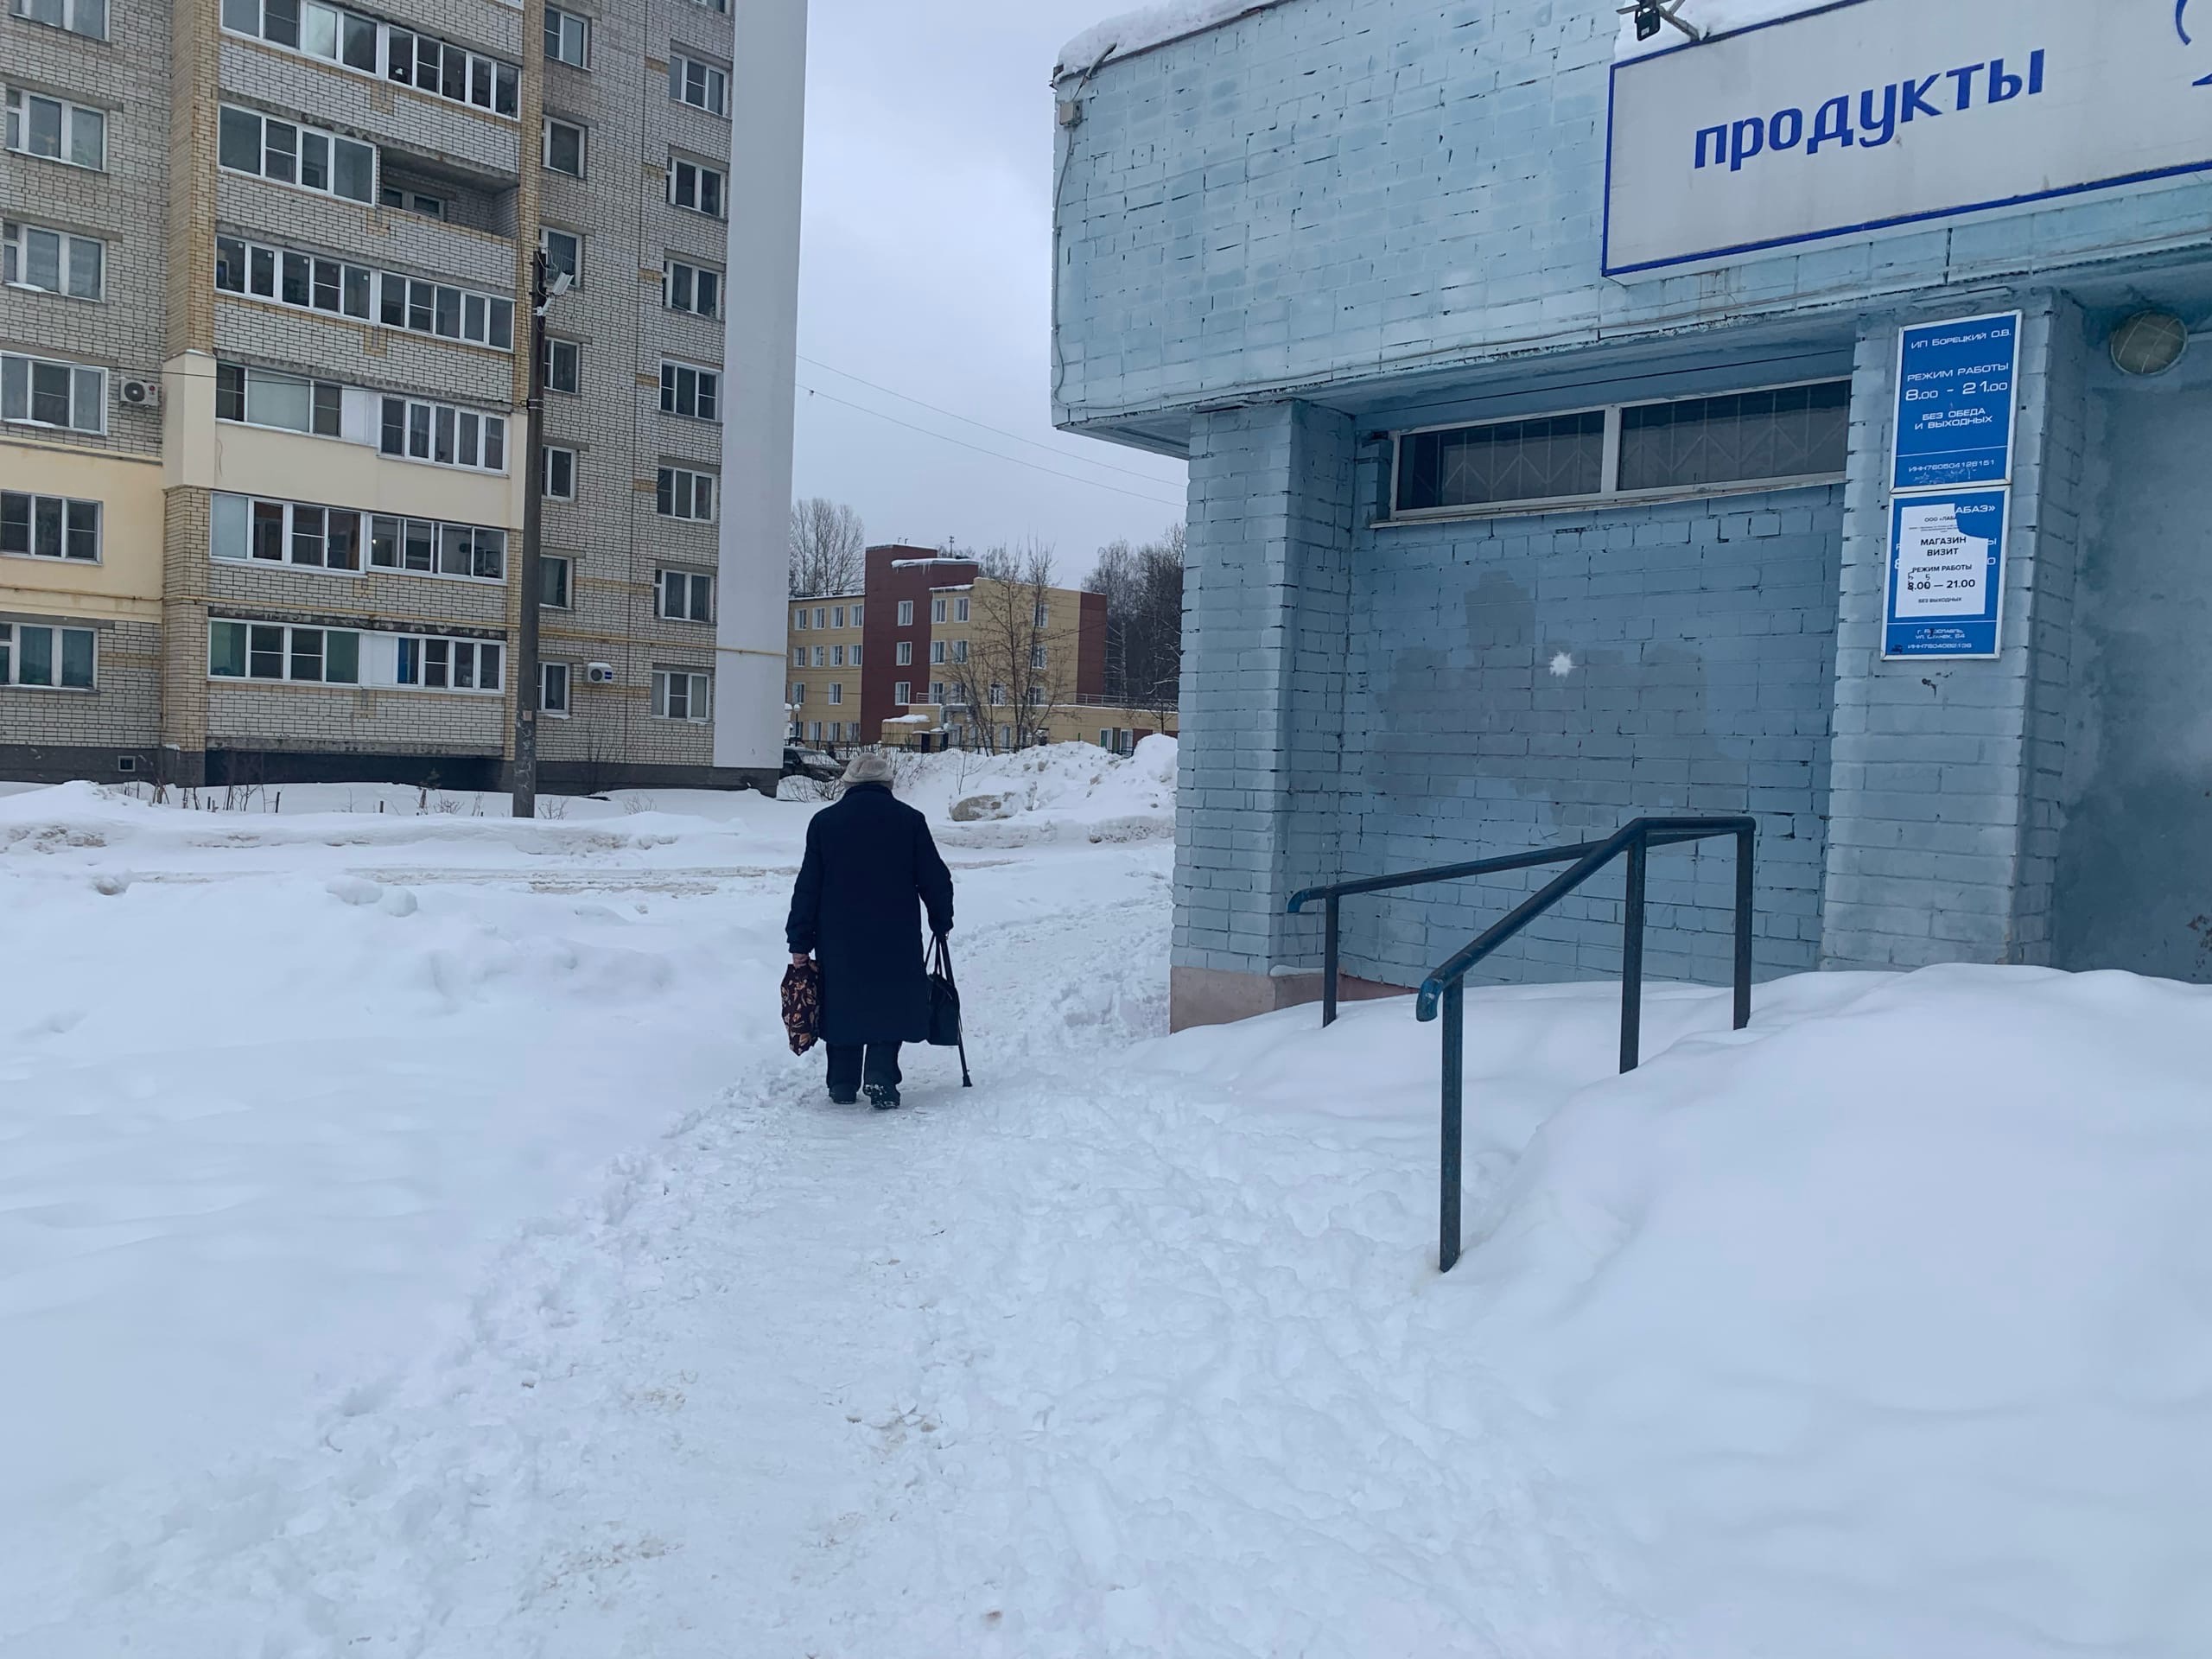 Ярославцы получили подскочившие в два раза счета за отопление 